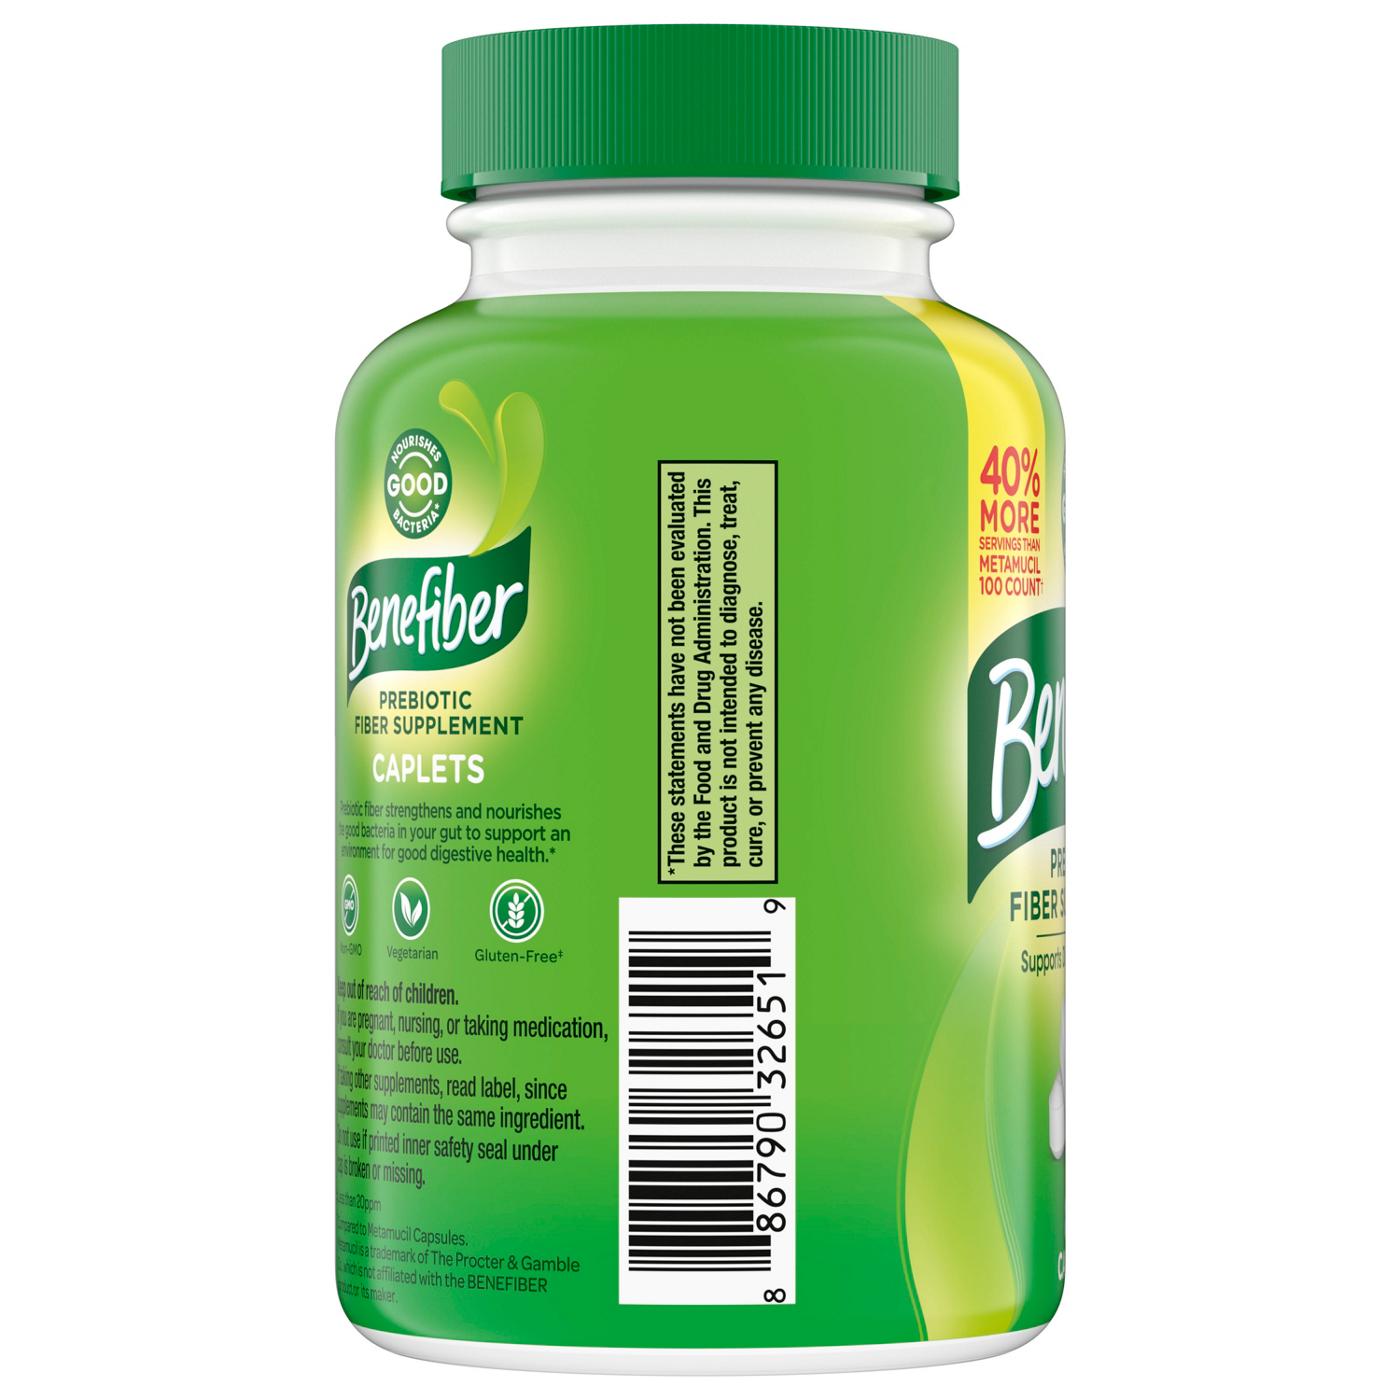 Benefiber Prebiotic Fiber Supplement Caplets; image 2 of 3